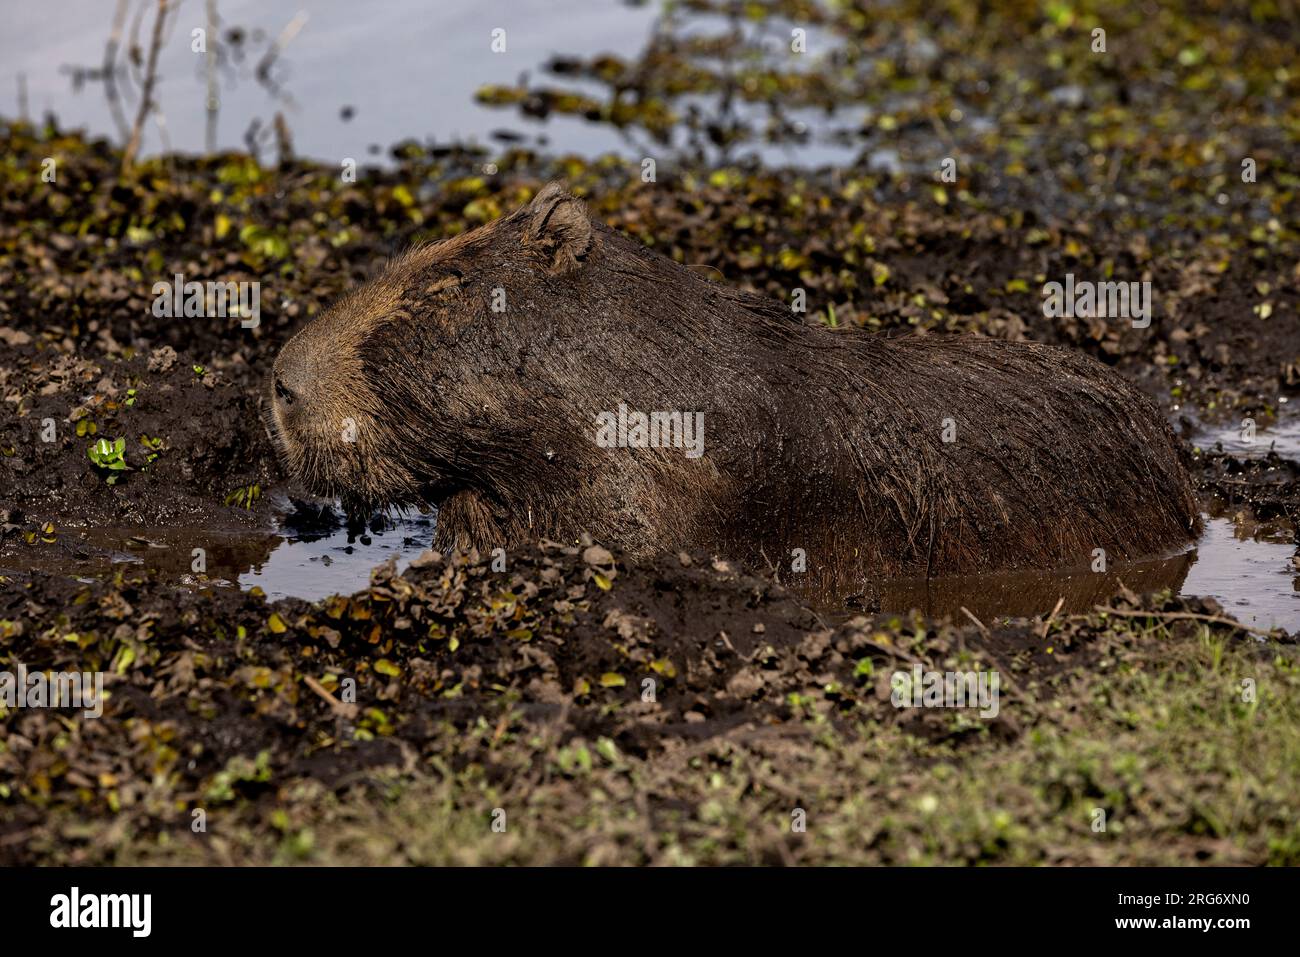 Observer un capybara dans son habitat naturel, l'Esteros del Ibera, un marais et un paradis pour les amoureux de la nature et les observateurs d'oiseaux en Argentine, Amérique du Sud Banque D'Images